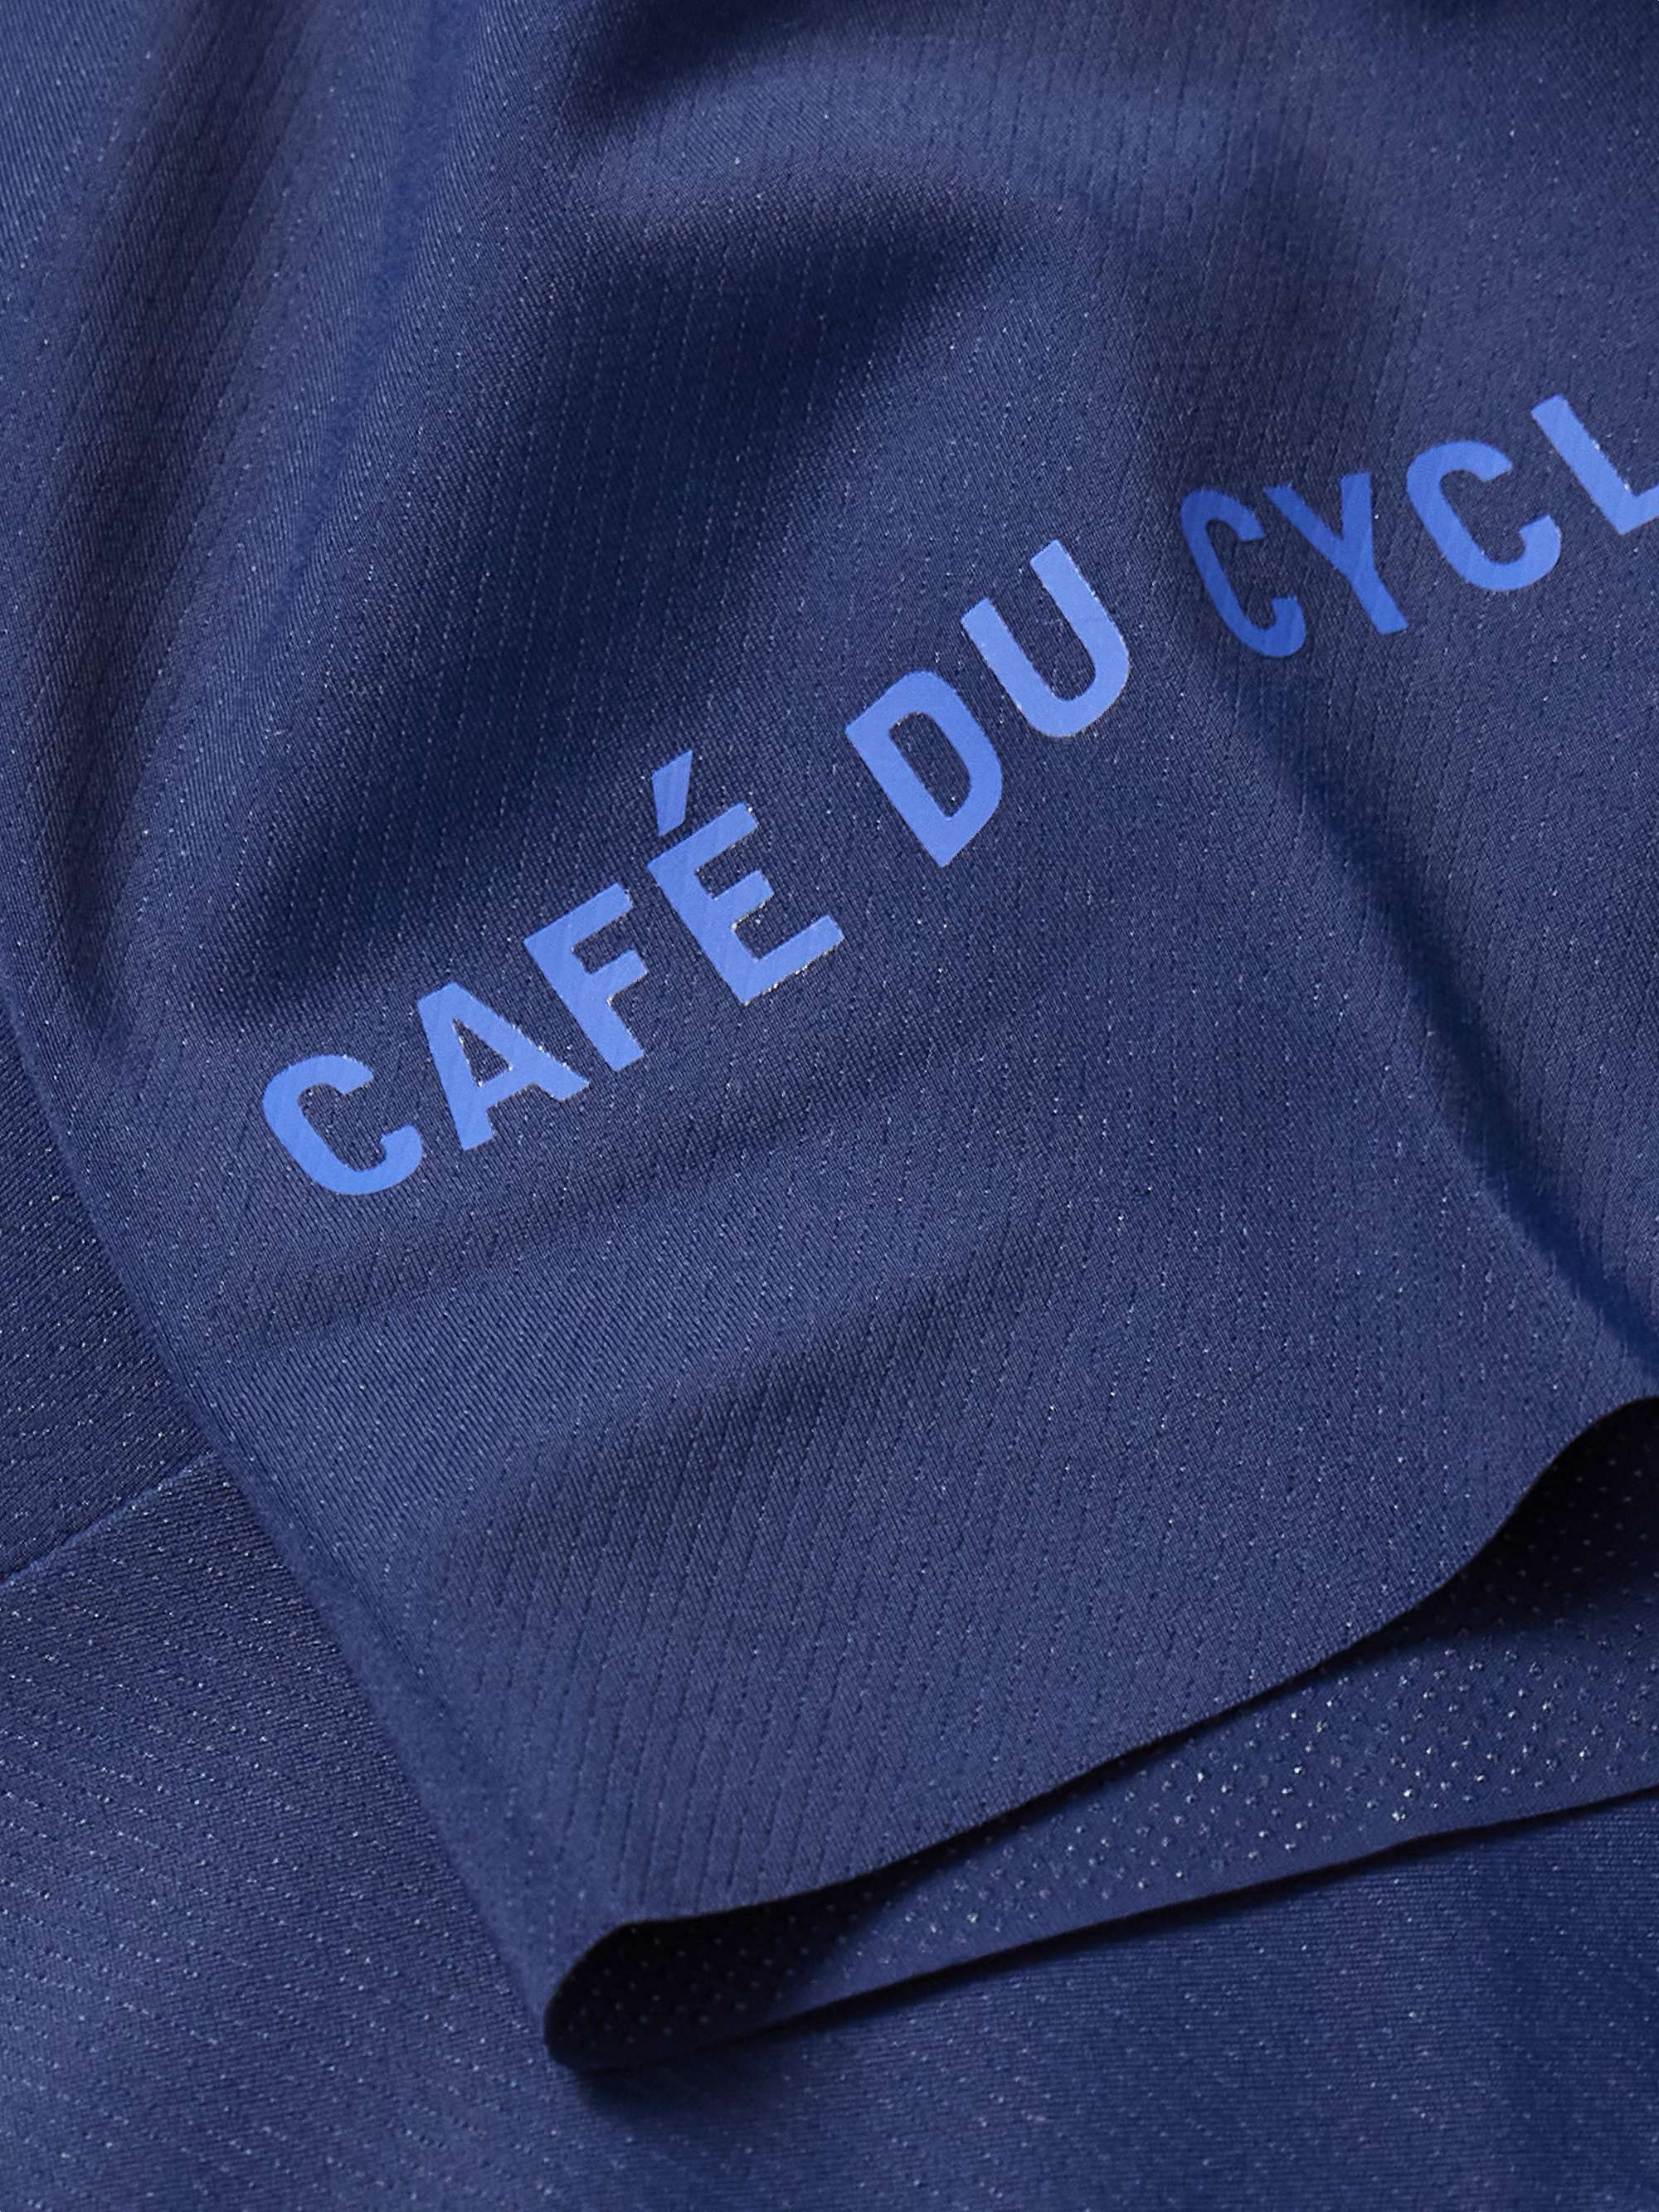 CAFE DU CYCLISTE 